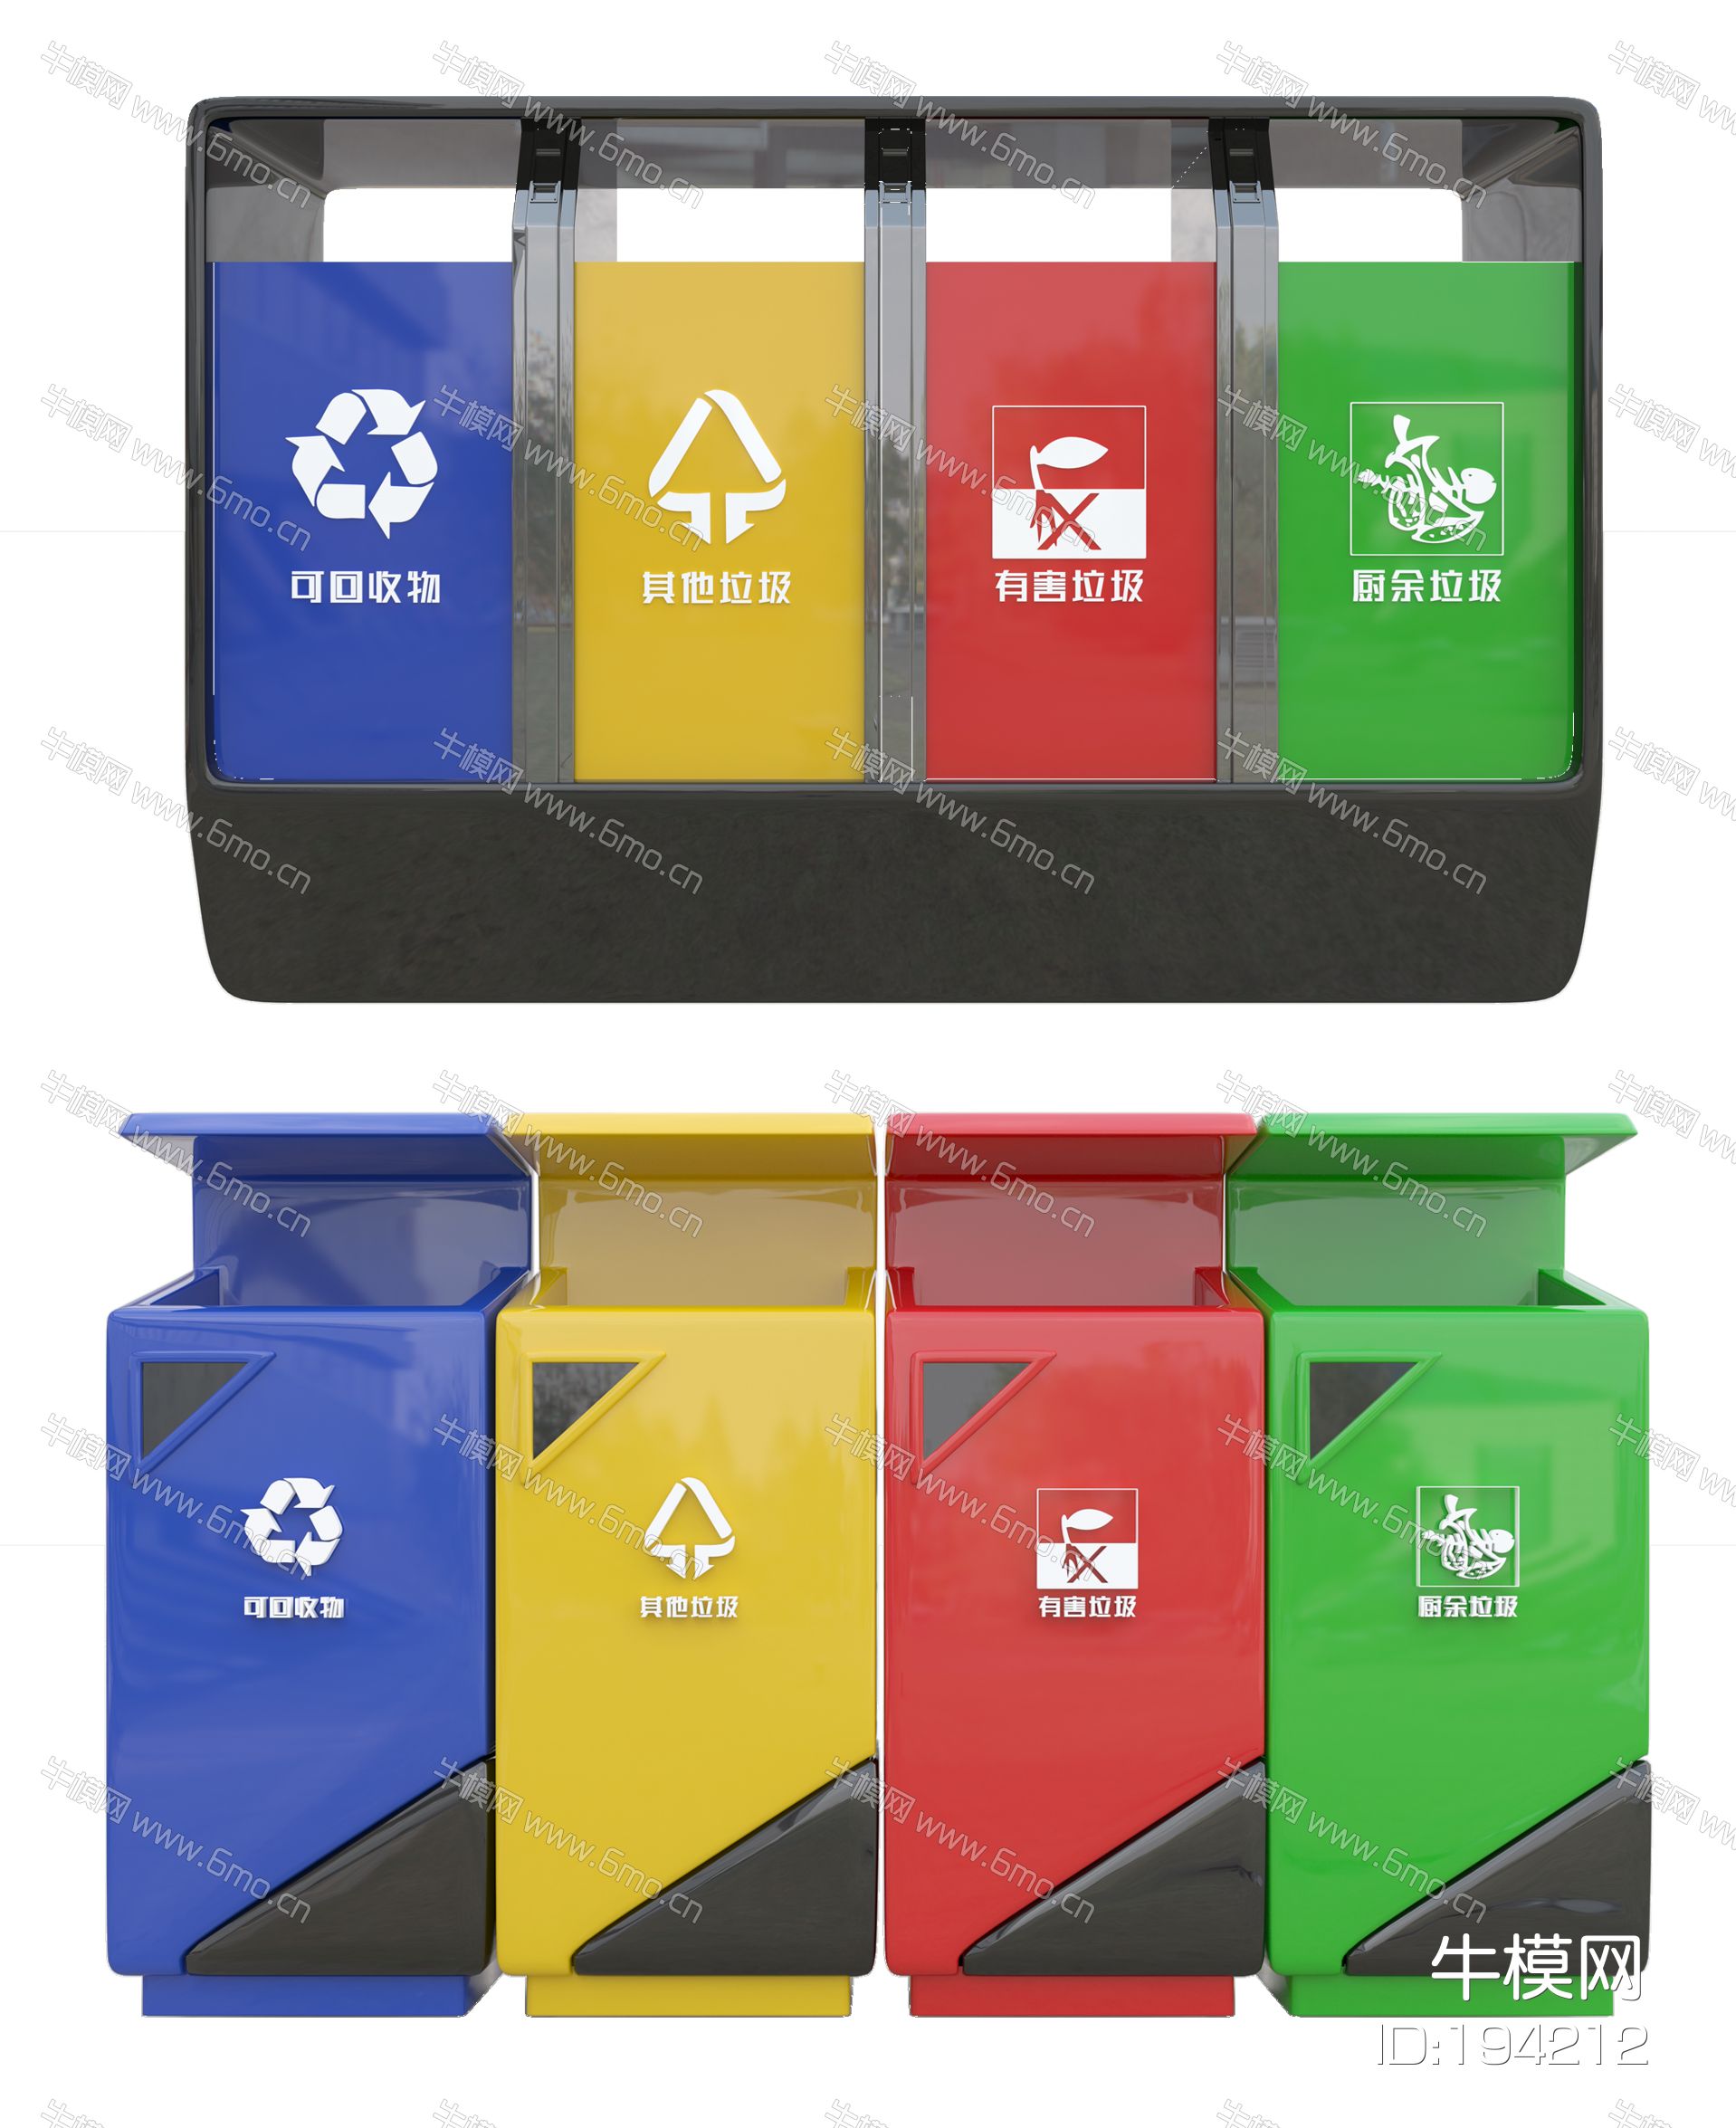 现代垃圾桶 分类垃圾桶 室外垃圾桶 卡通垃圾桶 金属垃圾桶 塑料垃圾桶